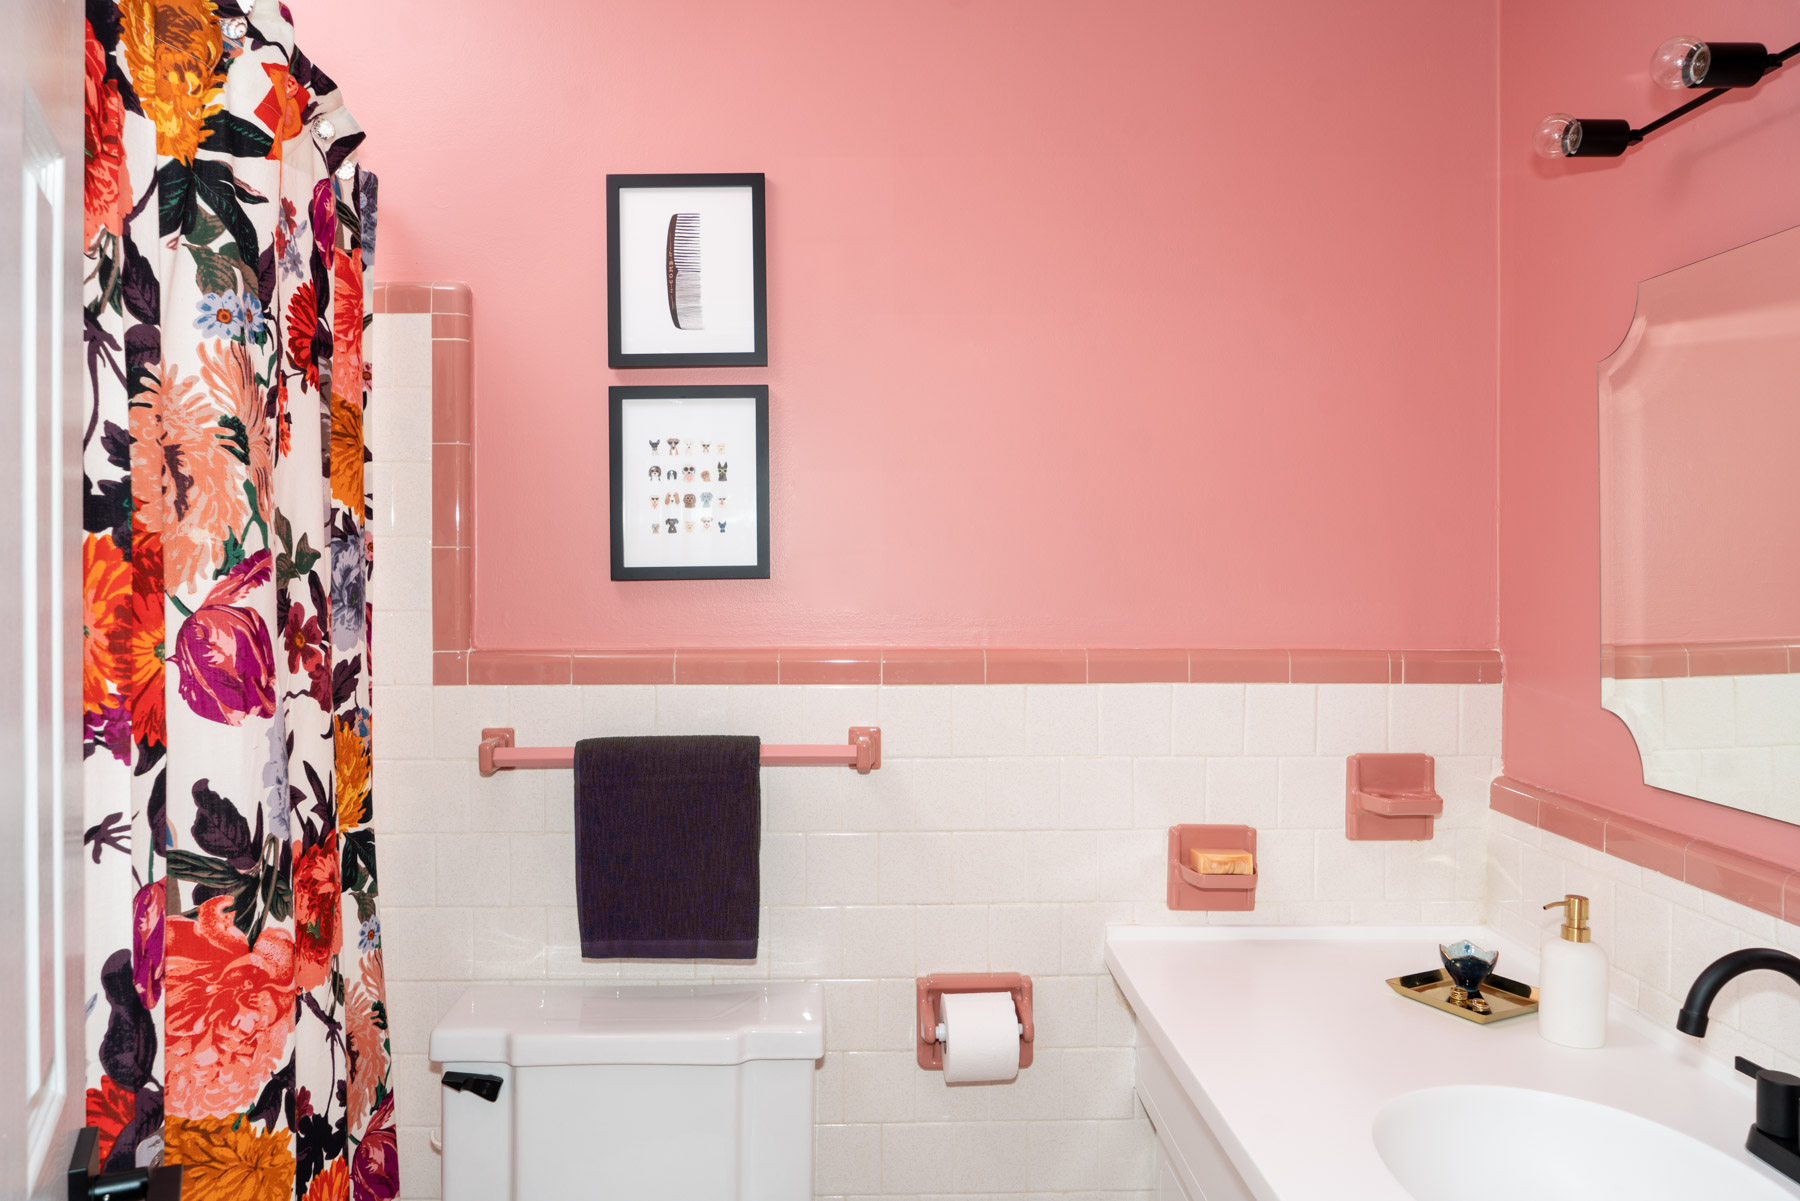 https://abbymurphyphoto.com/wp-content/uploads/2020/09/featured-Retro-Pink-Bathroom-Abby-Murphy-Blog-3.jpg